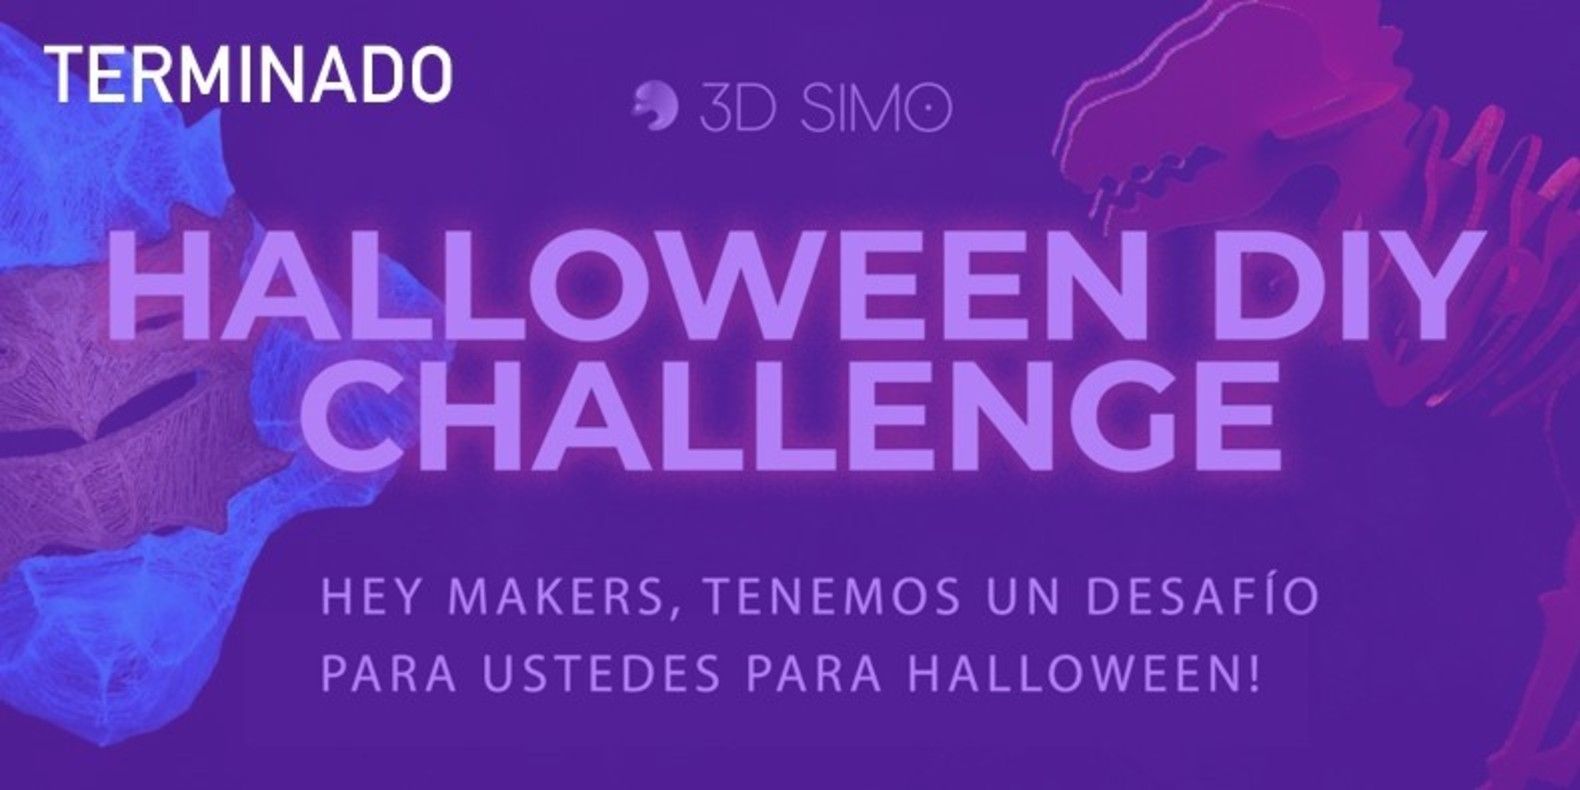 Hey makers, Halloween está cerca y tenemos un desafío para ustedes!